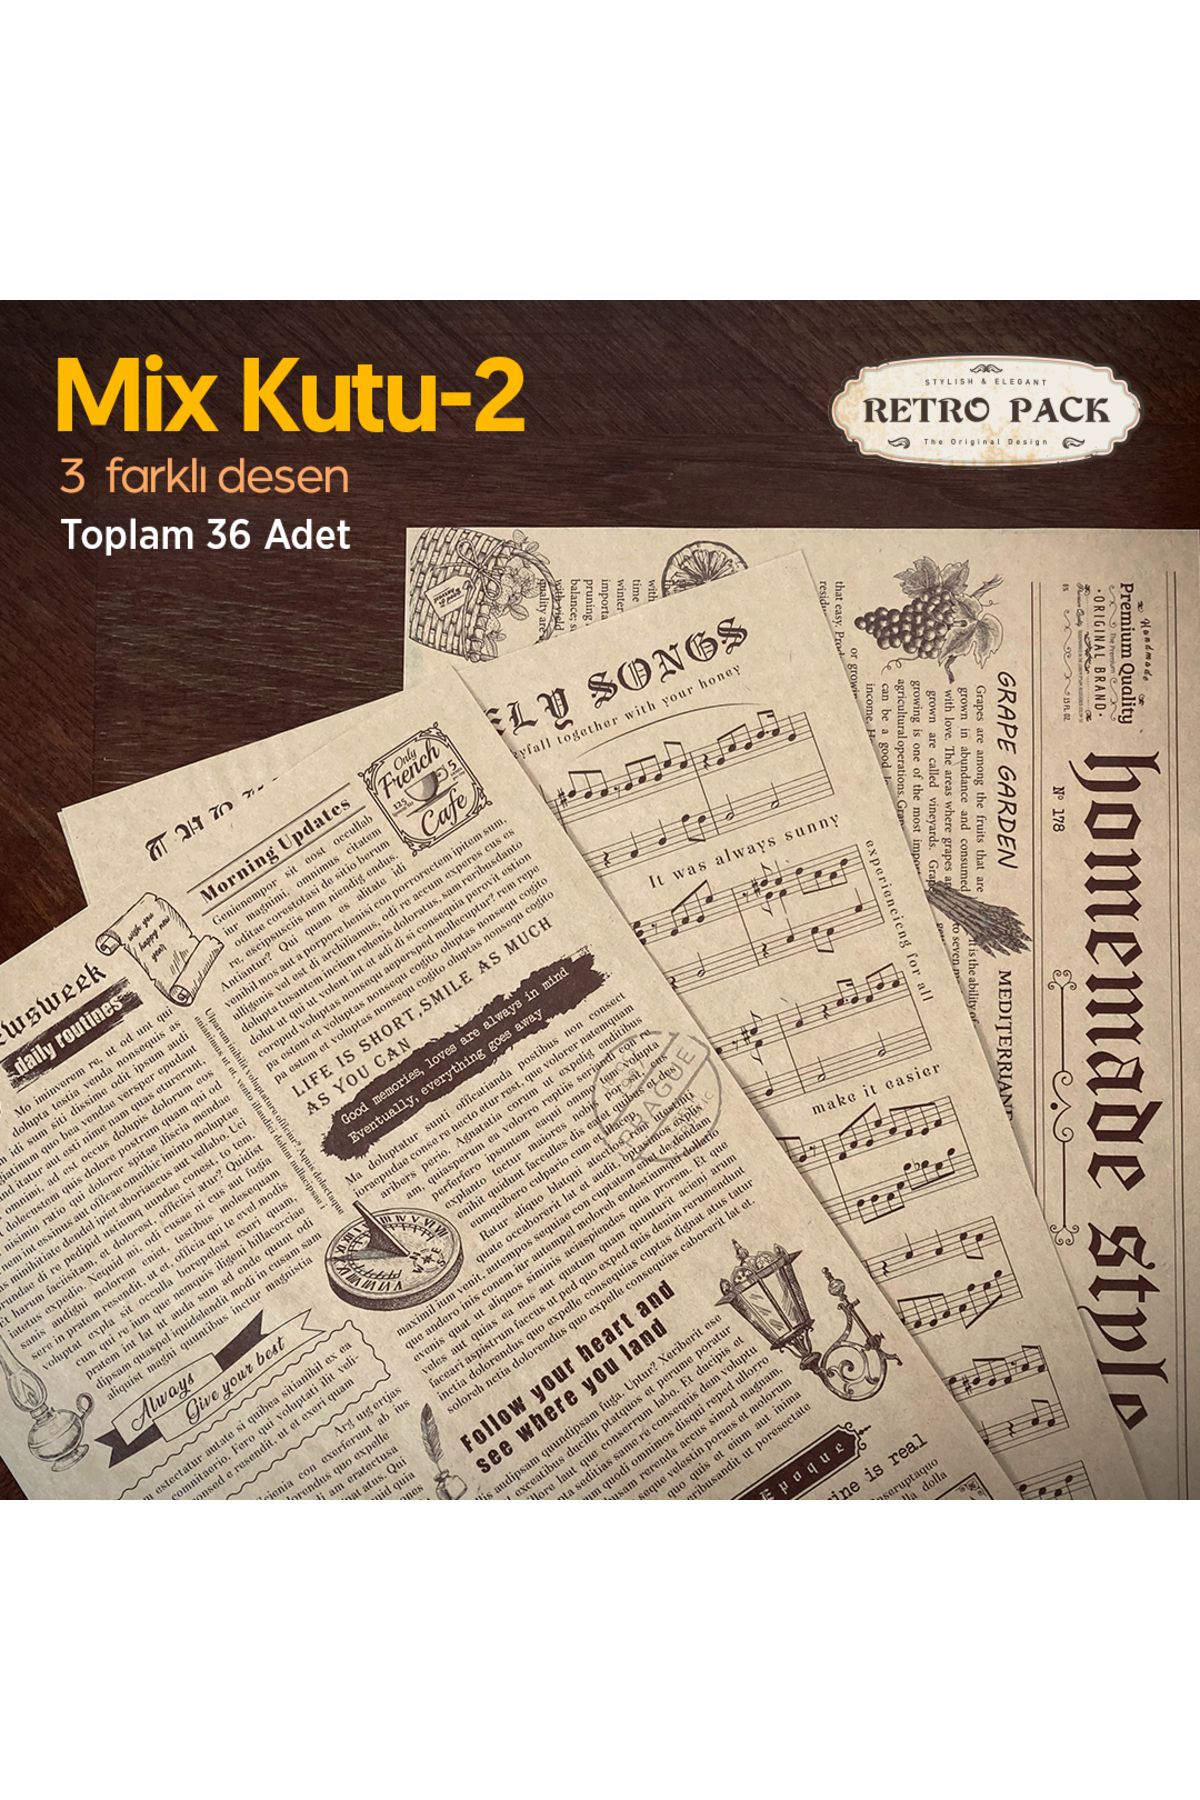 Retro Pack 1 Kutuda 36 Adet Desenli Yağlı Kağıt-3 Farklı Desen-mix Kutu 2-sunum Kağıdı-vintage Sunum Kağıdı